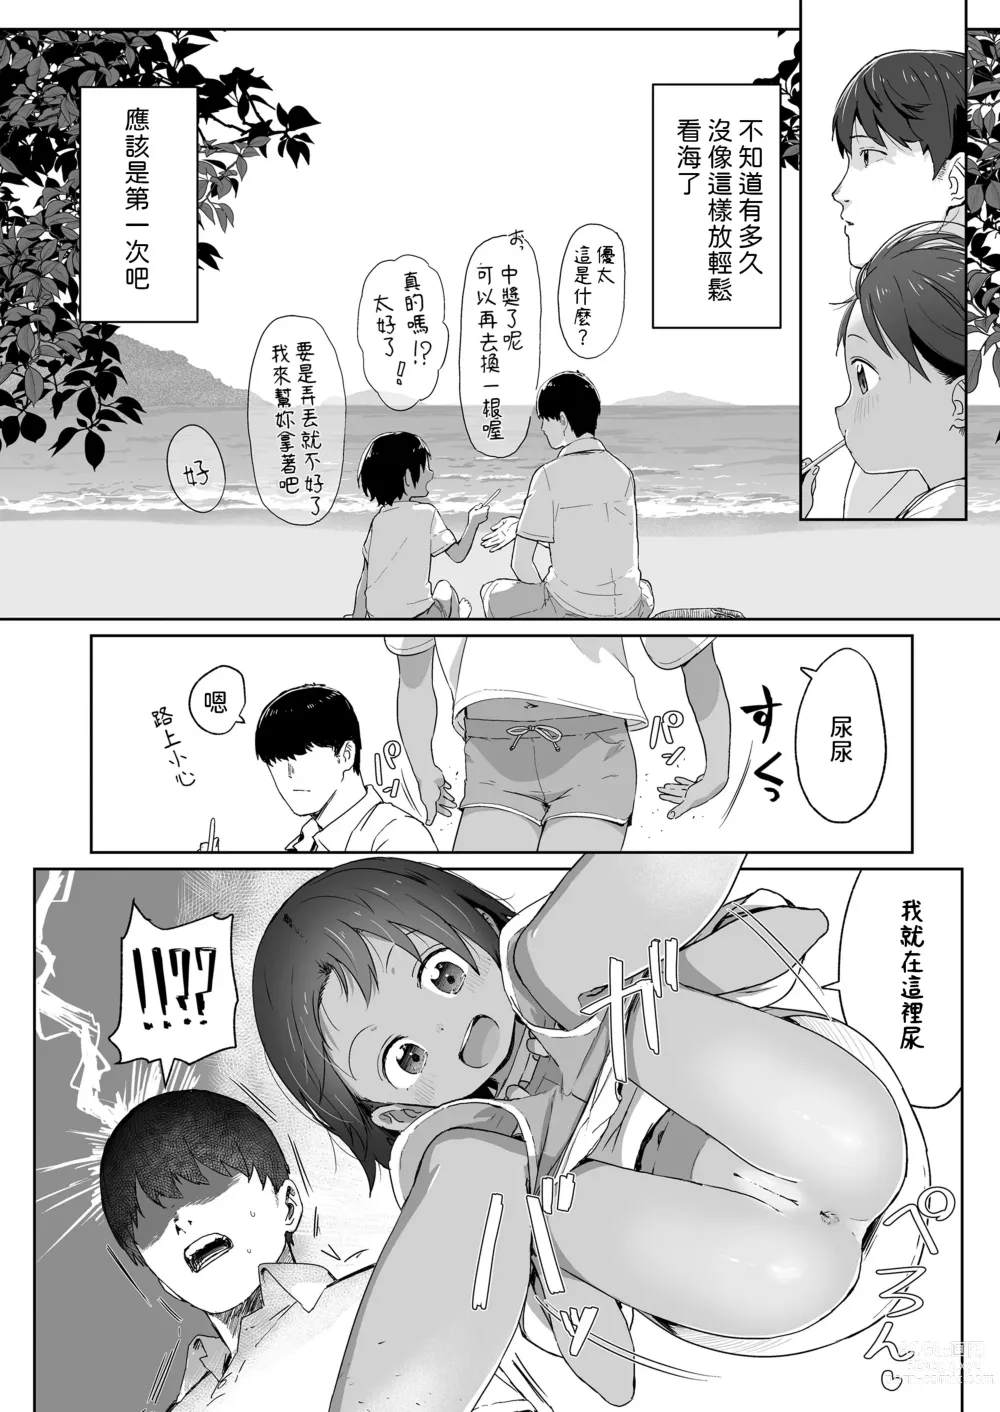 Page 6 of manga Ano Natsu no Hanashi